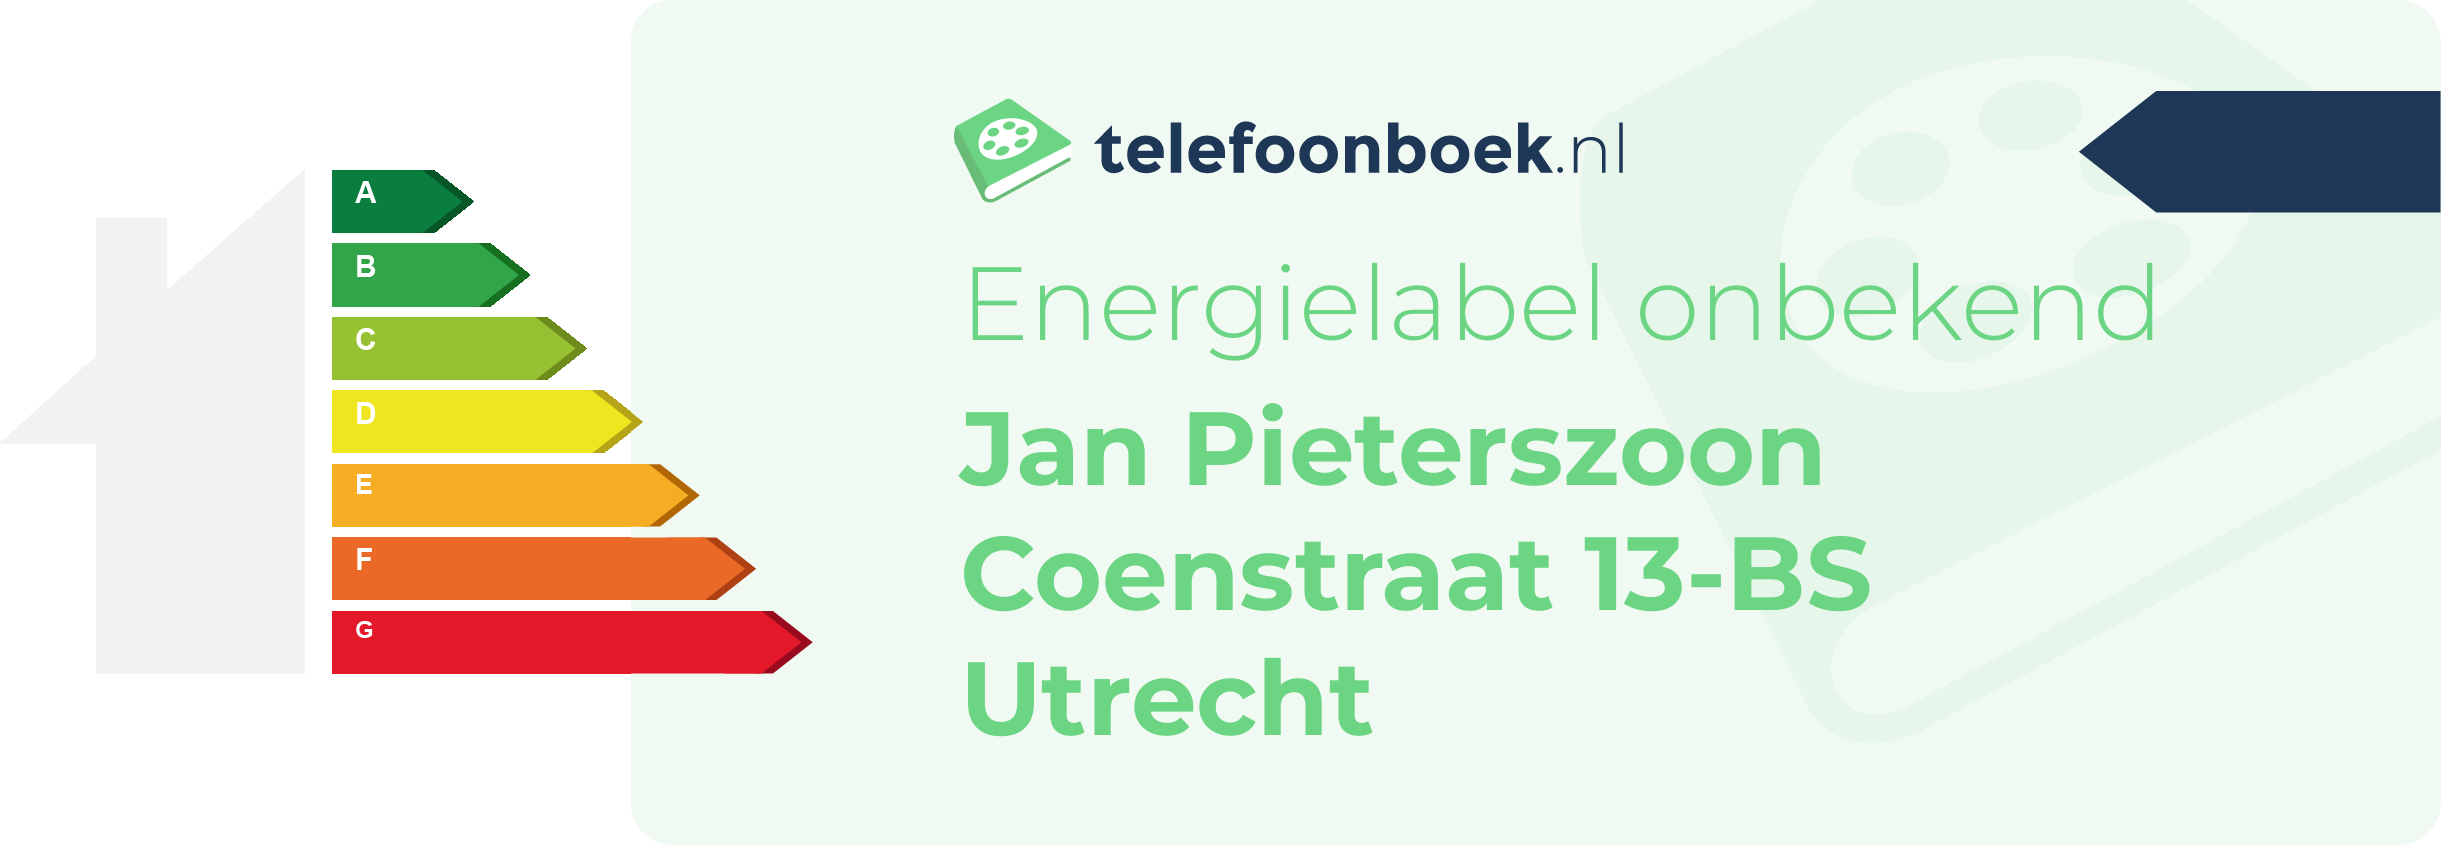 Energielabel Jan Pieterszoon Coenstraat 13-BS Utrecht